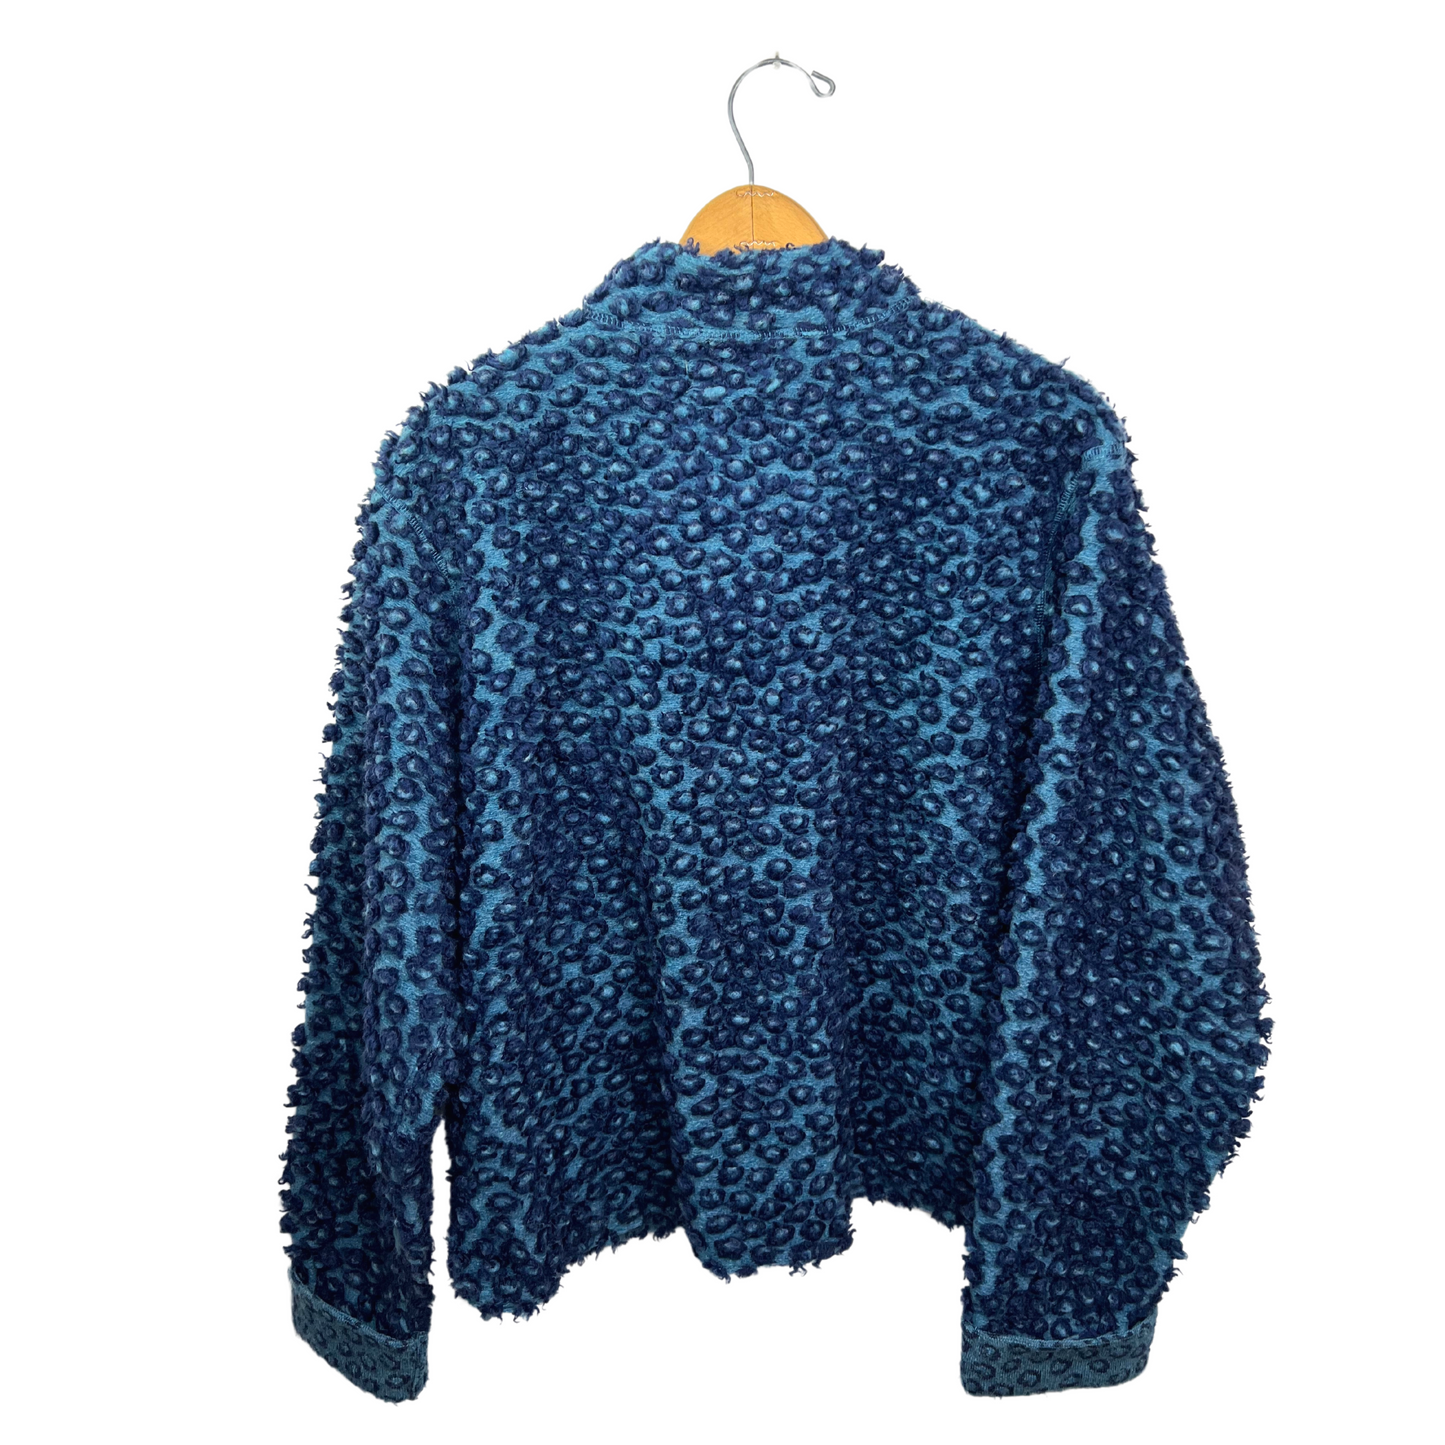 90’s Fuzzy Teddy Bear Fleece Blue Leopard Print Shacket Cardigan Size S/M